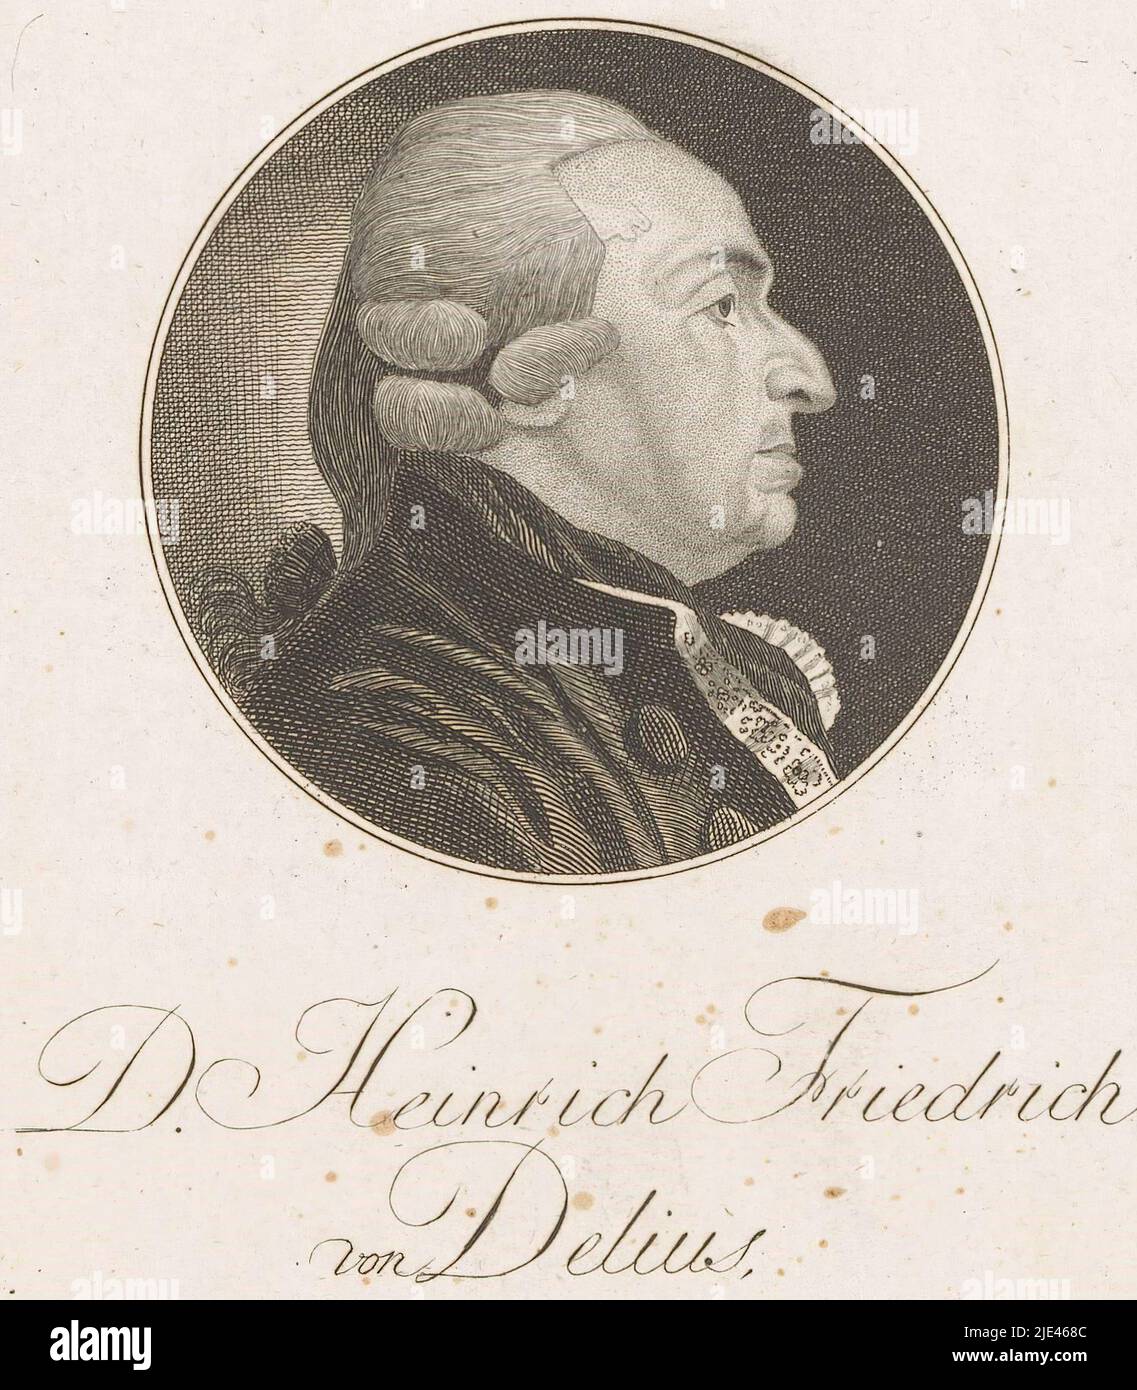 Portrait of Heinrich Friedrich von Delius, Christoph Wilhelm Bock, 1791, print maker: Christoph Wilhelm Bock, (mentioned on object), Christoph Wilhelm Bock, (mentioned on object), Neurenberg, 1791, paper, etching, engraving, h 149 mm - w 93 mm Stock Photo